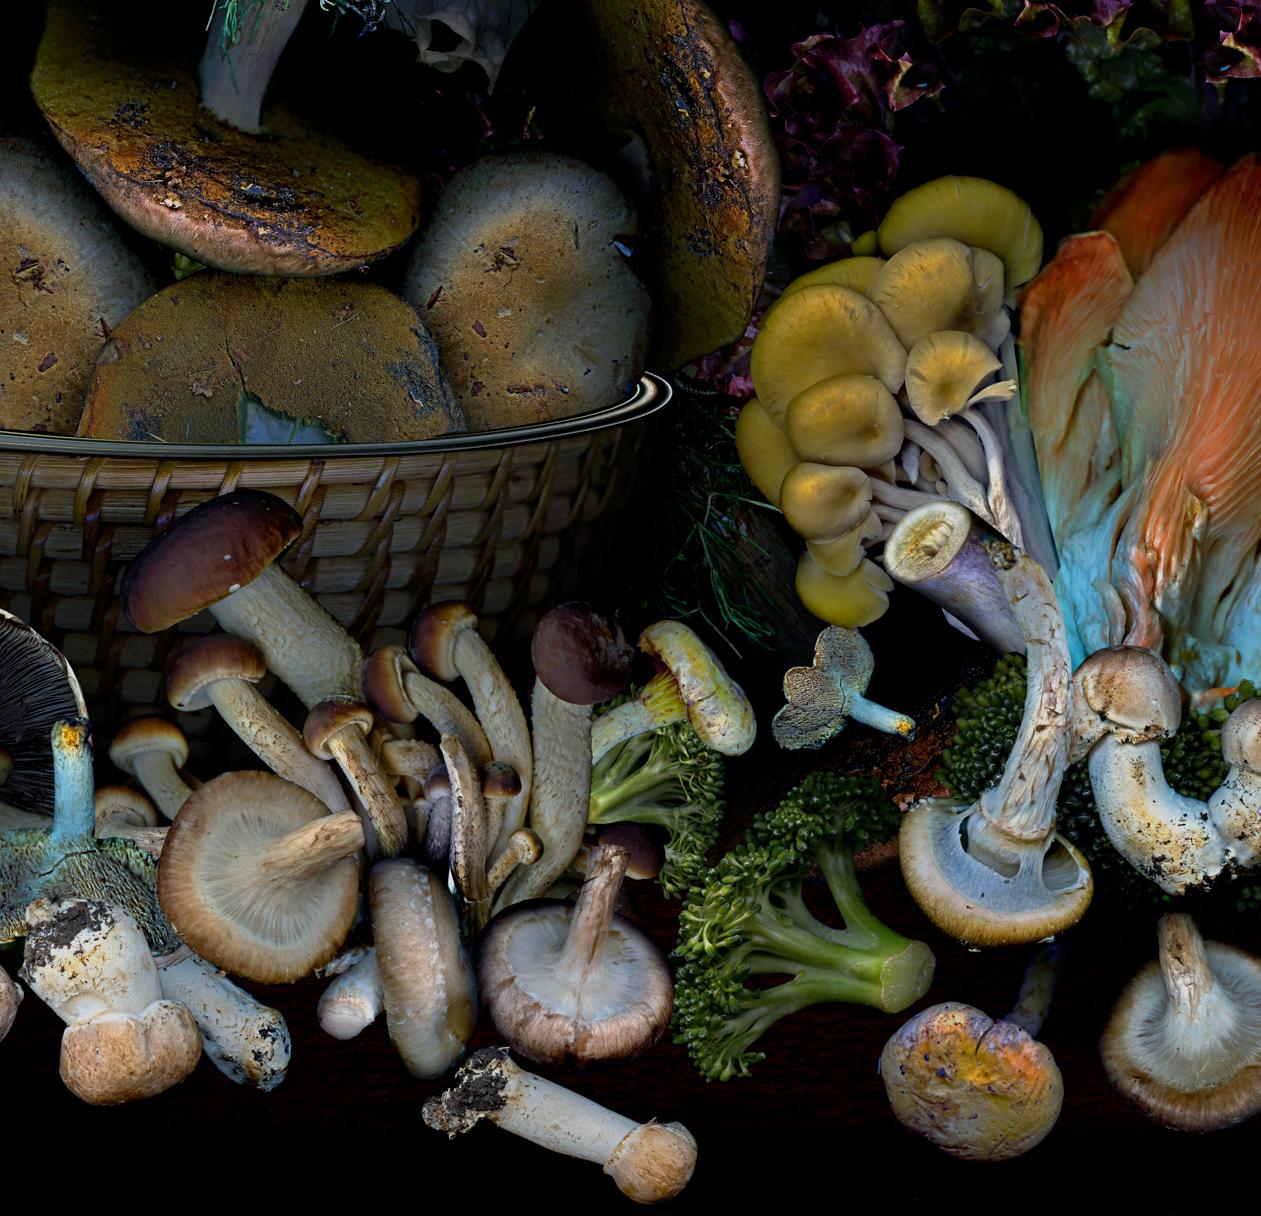 Gemüse aus meinem Garten #3 von Zoltan Gerliczki
Aus der Serie Gemüse aus meinem Garten
Archivalischer Pigmentdruck 
Bildgröße: 39 Zoll H x 48 Zoll B.
Auflage von 9 + 2AP
Ungerahmt
2021

